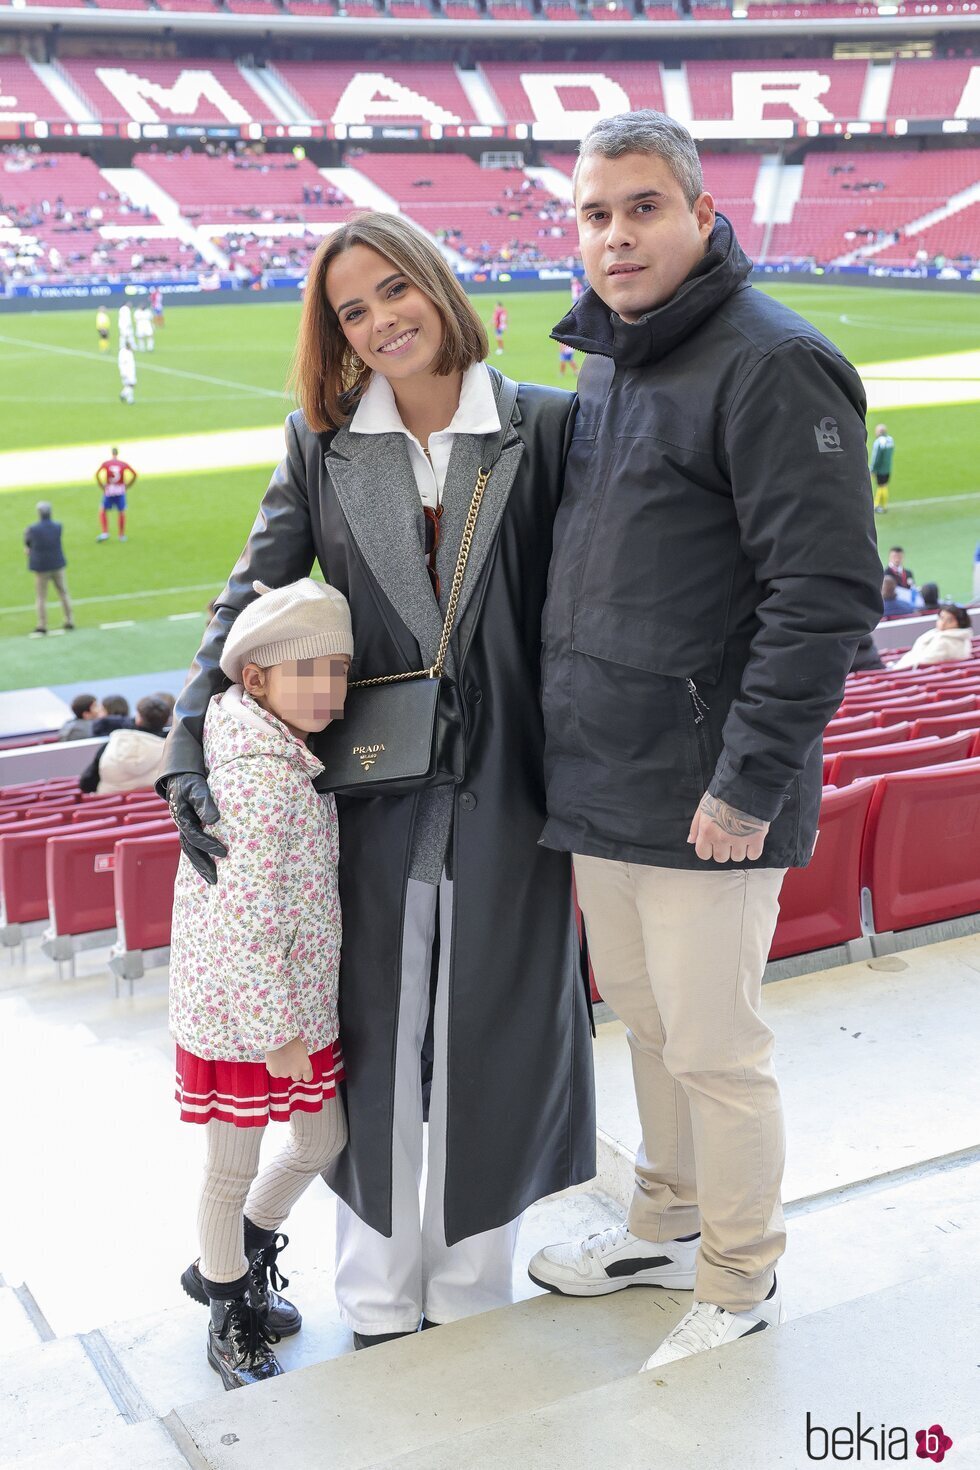 Gloria Camila, José Fernando y su hija Rocío en el partido de fútbol Artistas vs Famosos